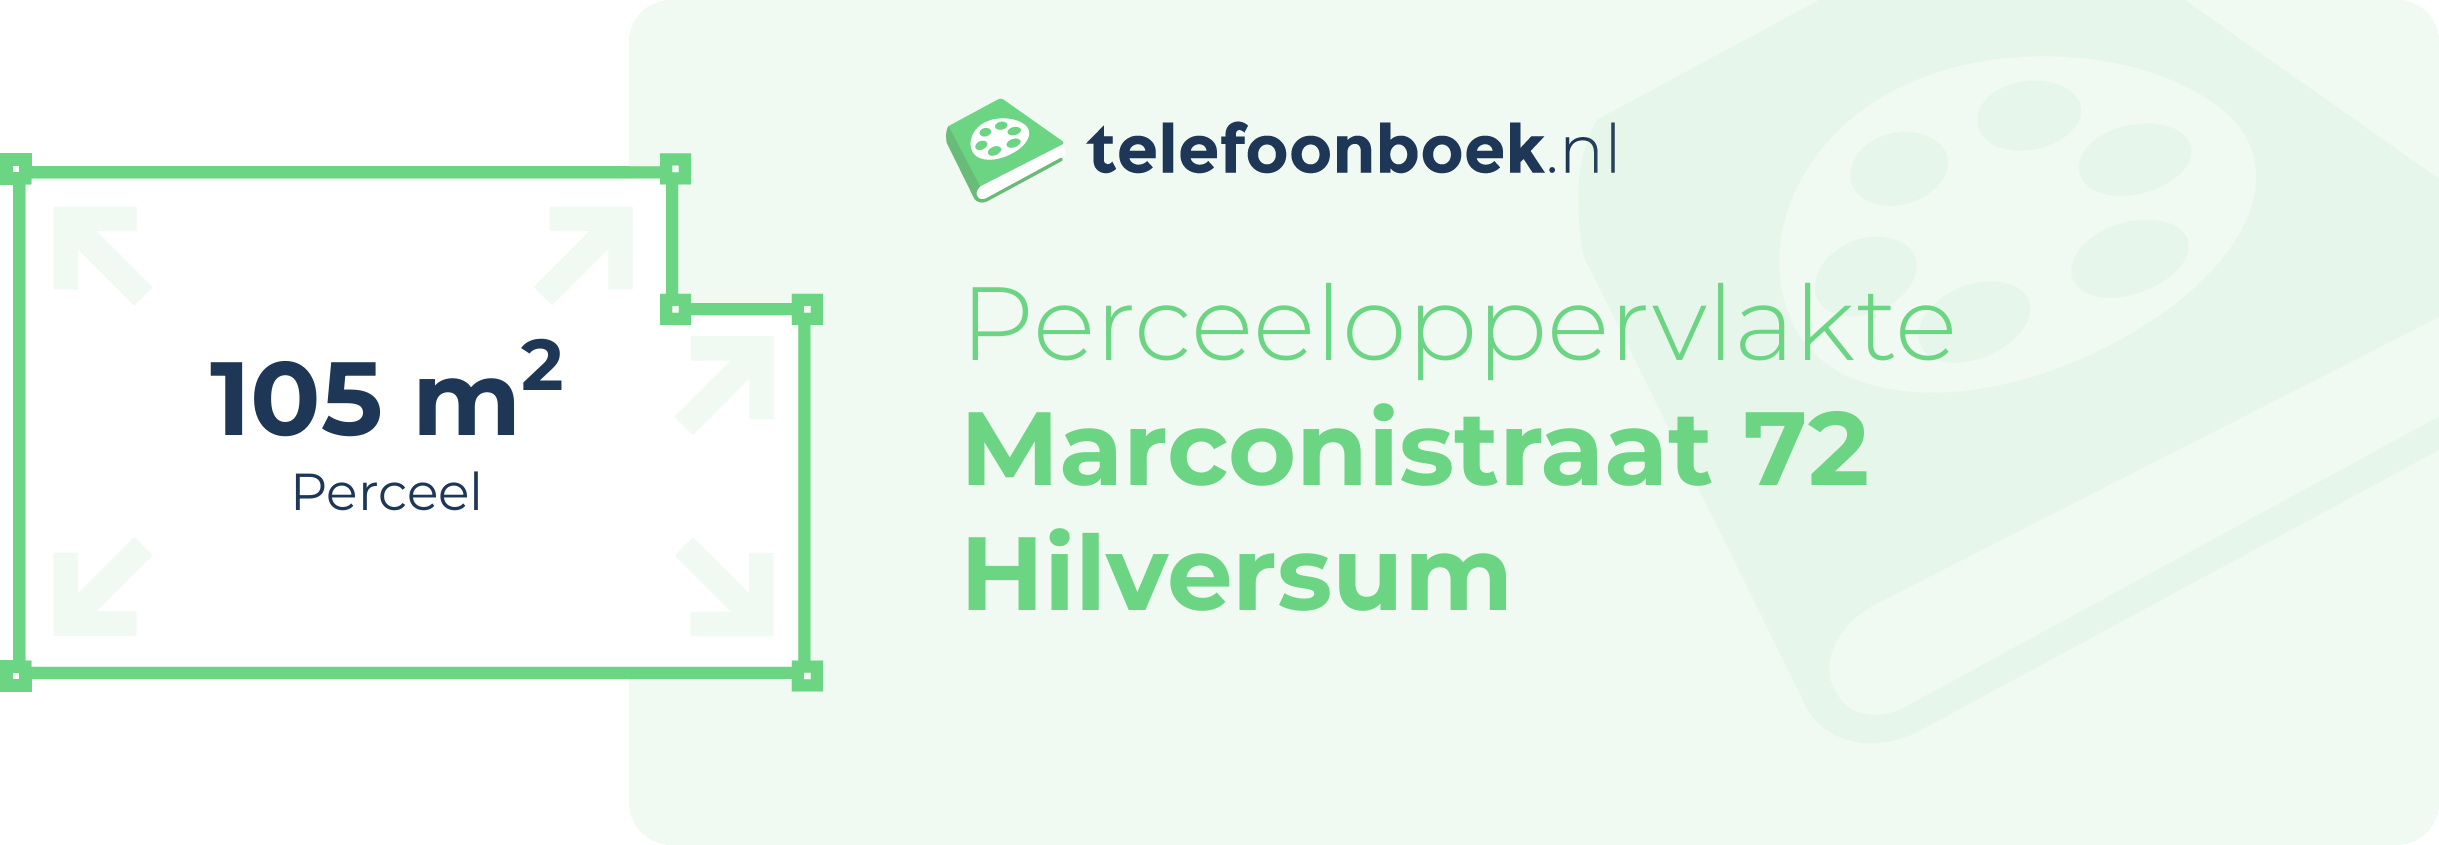 Perceeloppervlakte Marconistraat 72 Hilversum